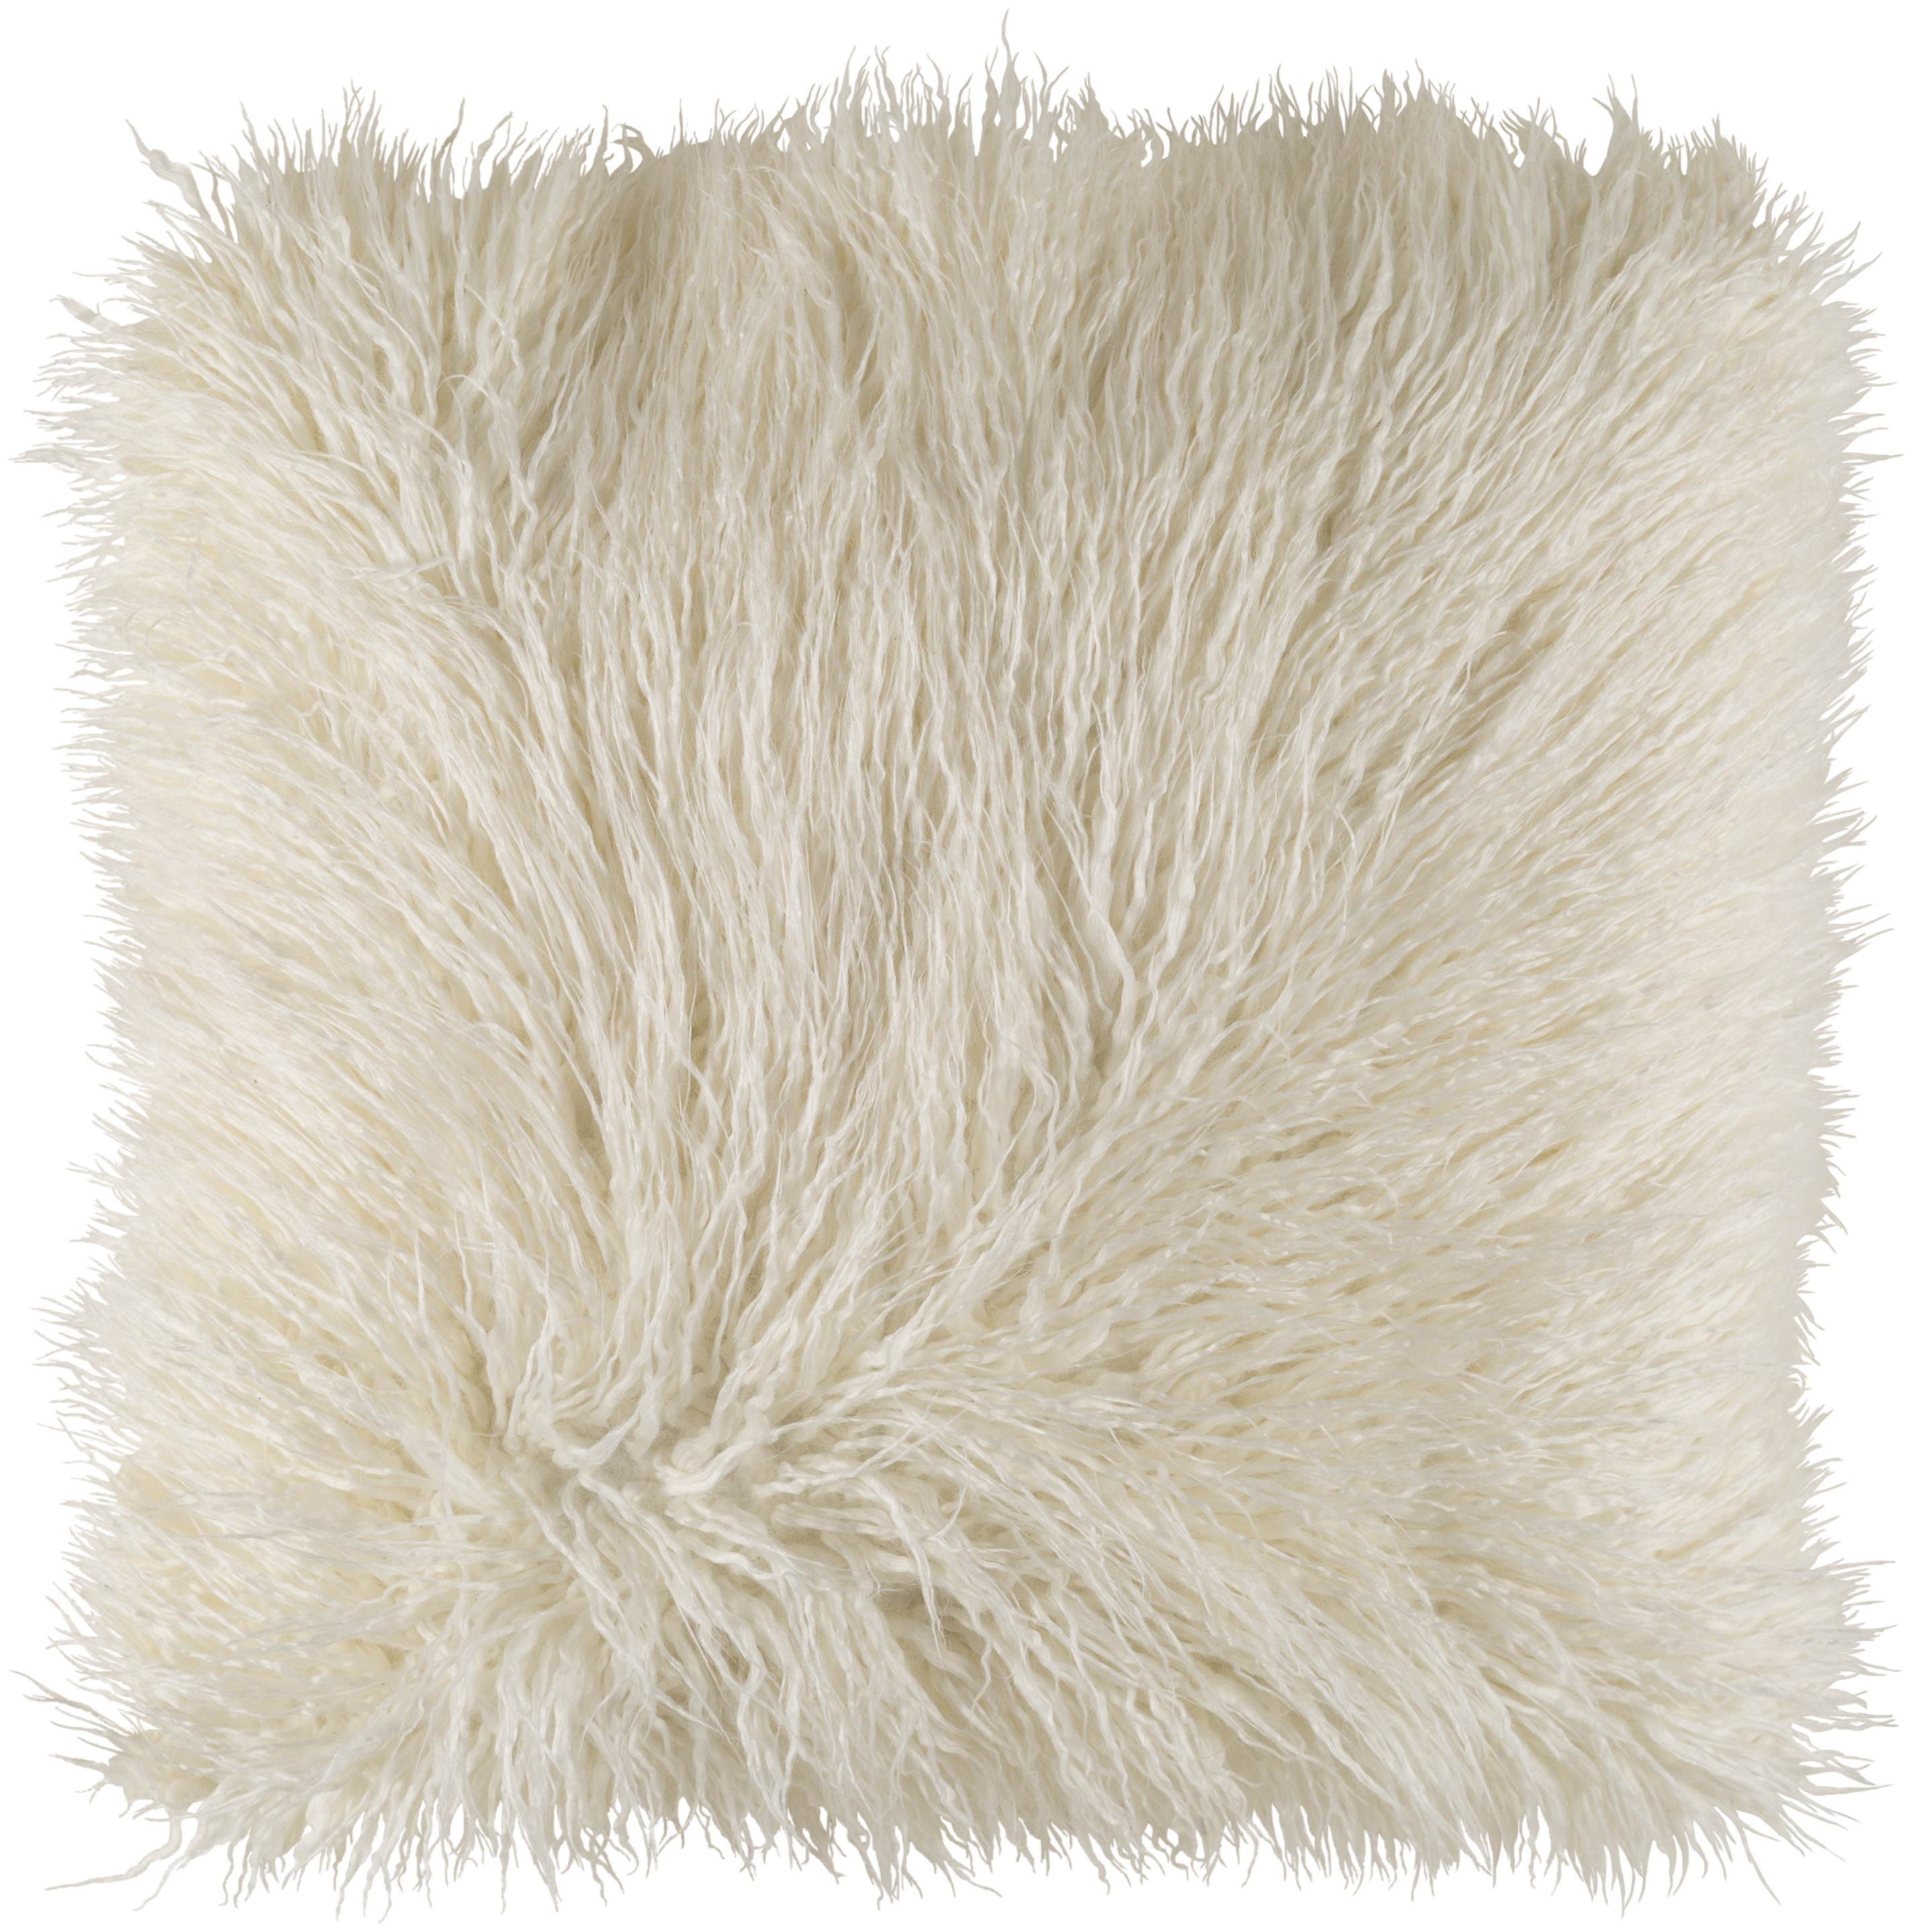 Kharaa Faux Fur Pillow Cover, Cream, 18" x 18" - Image 0